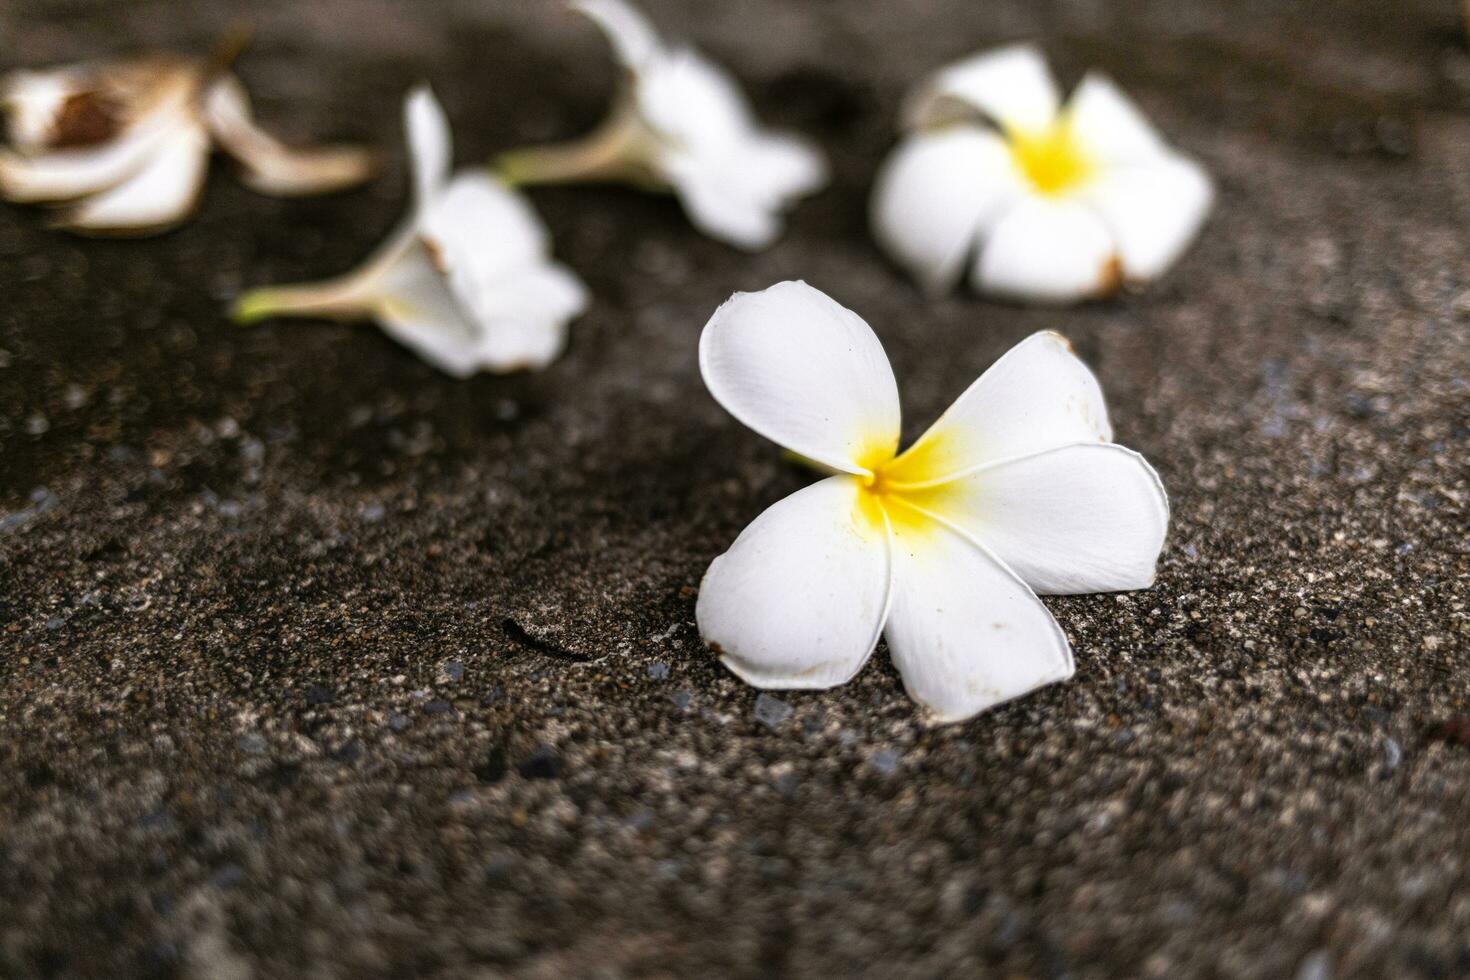 blanco frangipani flor en el cemento piso, tailandia foto